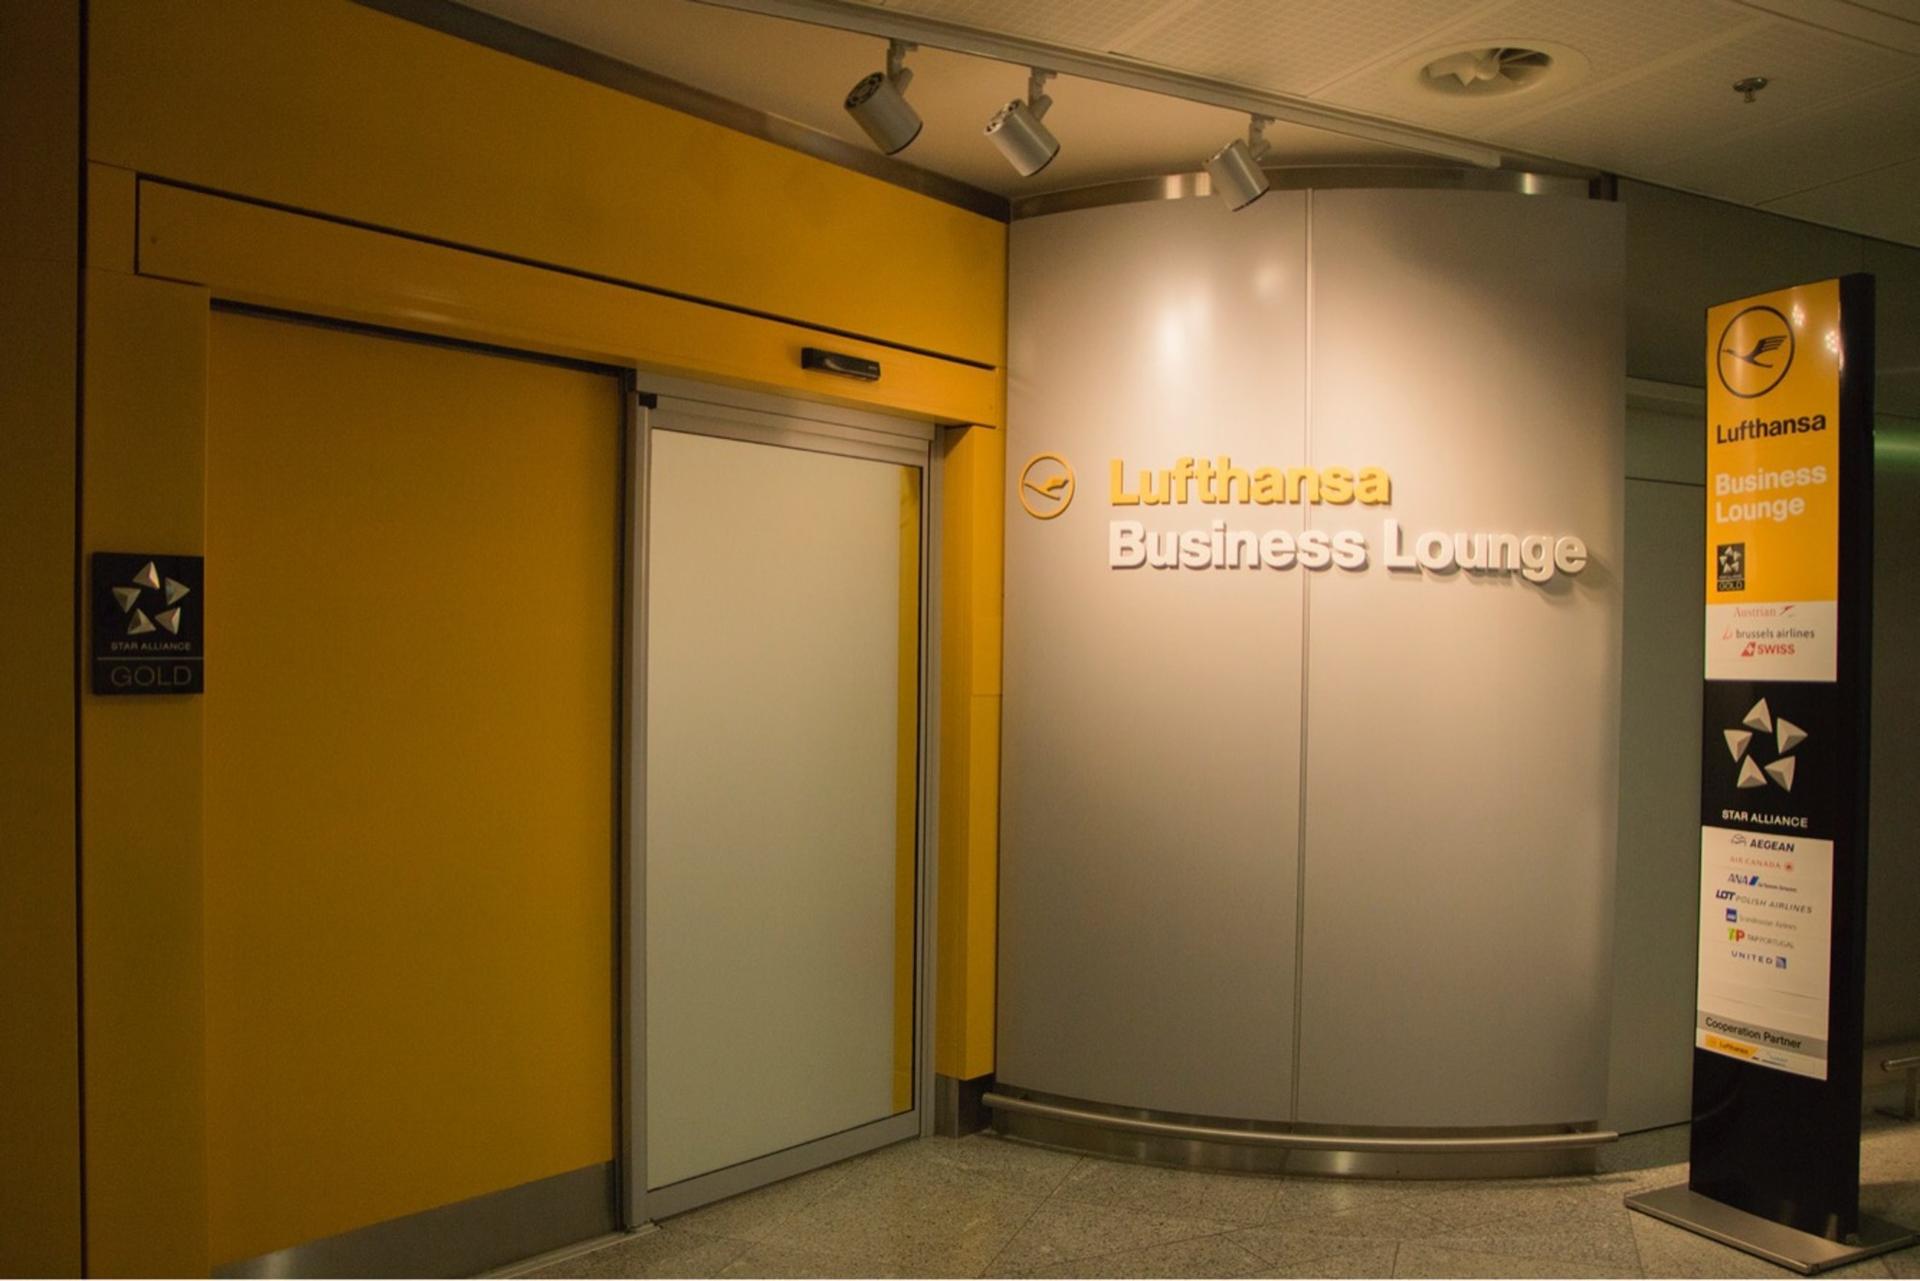 Lufthansa Lounge image 5 of 8